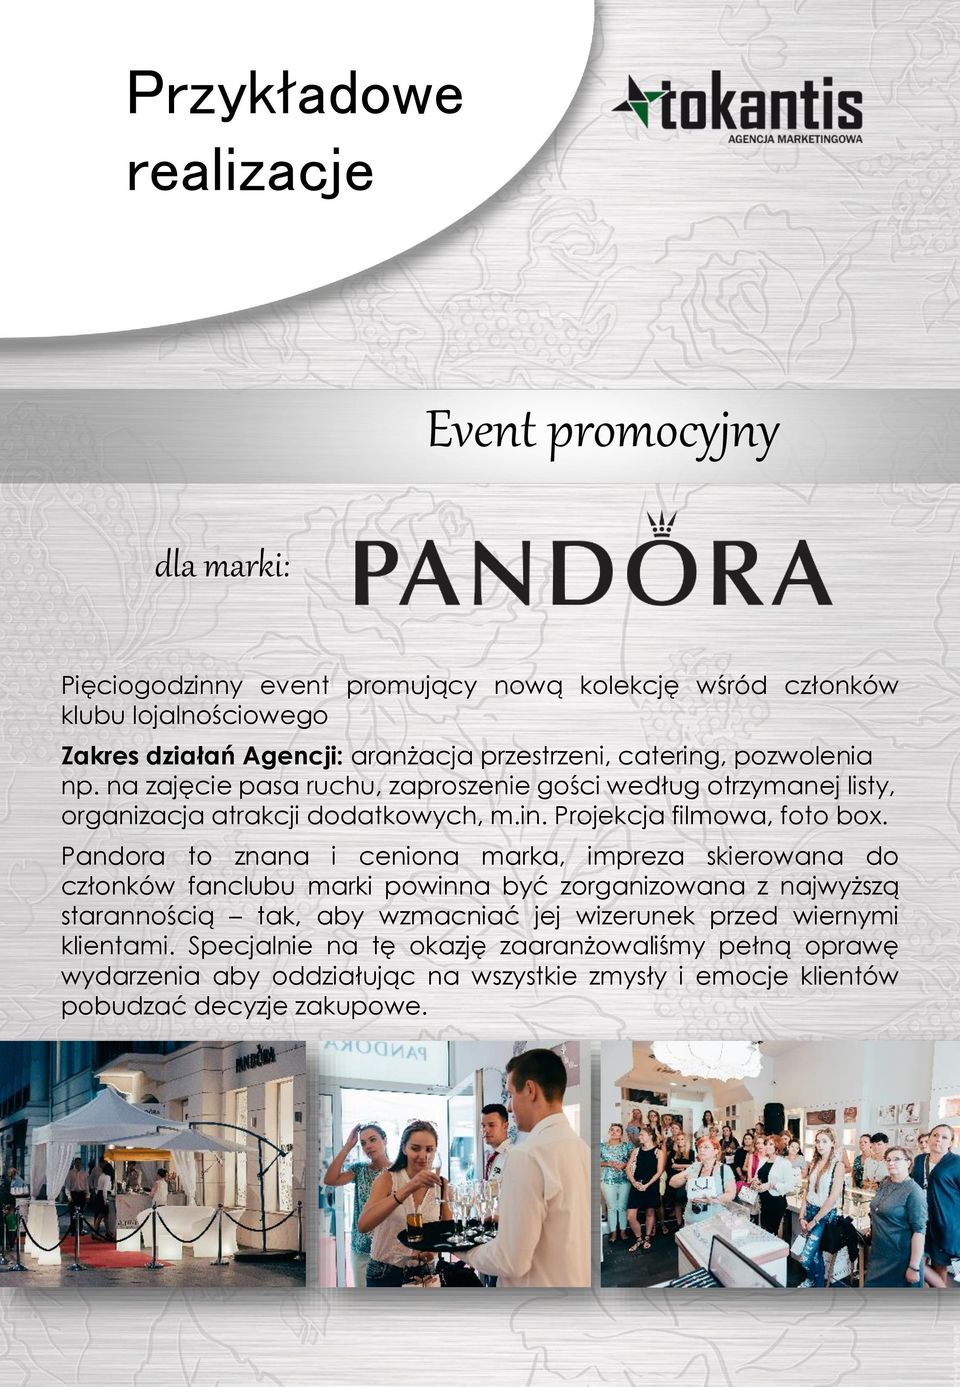 Pandora to znana i ceniona marka, impreza skierowana do członków fanclubu marki powinna być zorganizowana z najwyższą starannością tak, aby wzmacniać jej wizerunek